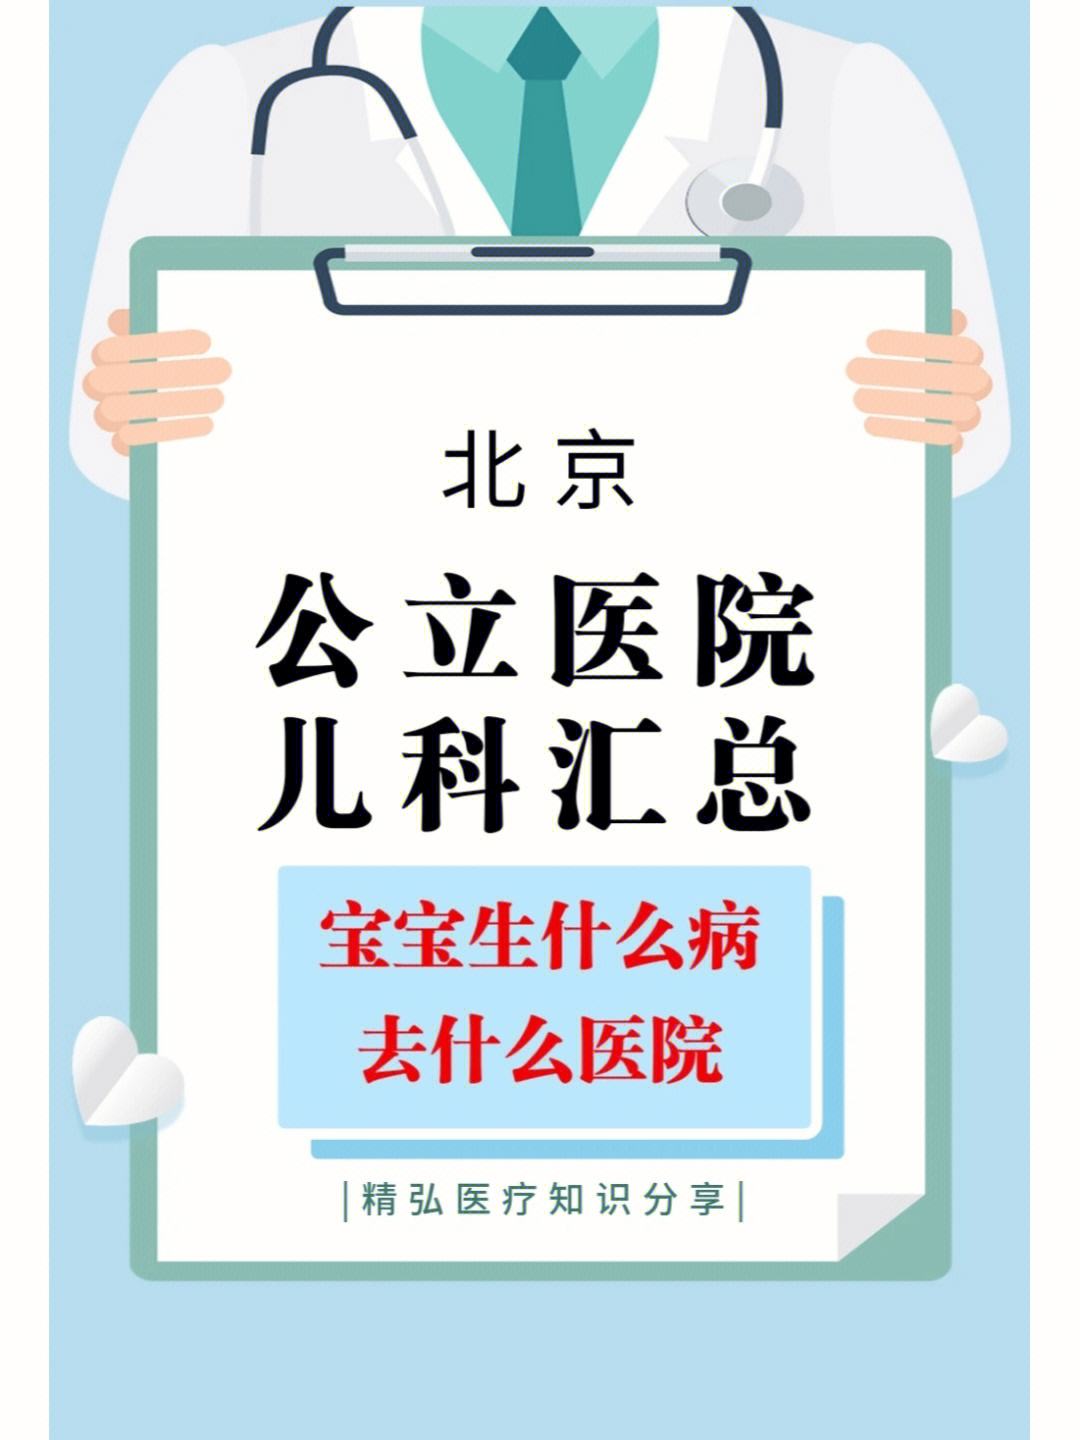 关于中国人民解放军第三零五医院医院黄牛挂号，京医指导就医分享的信息